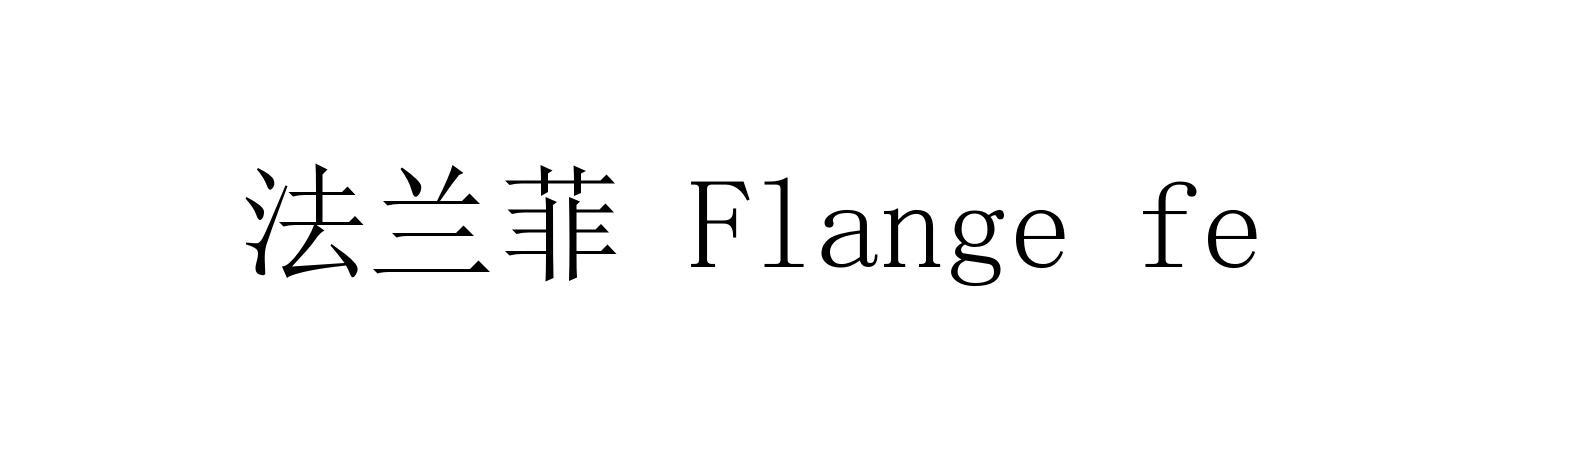 法兰菲 FLANGE FElogo